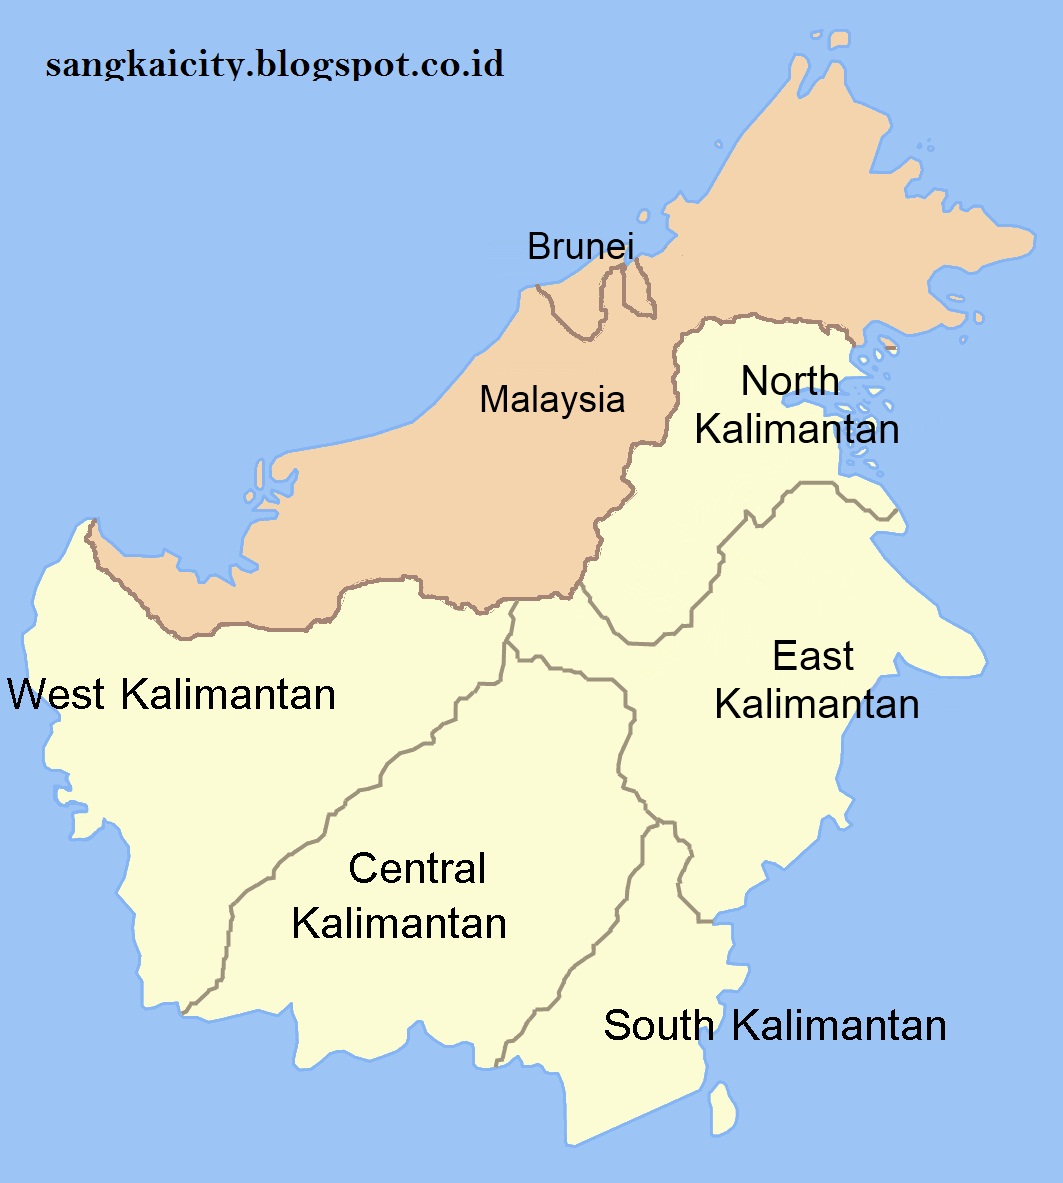 Penyebutan Borneo Untuk Pulau Kalimantan [asalusul]  Sangkay City